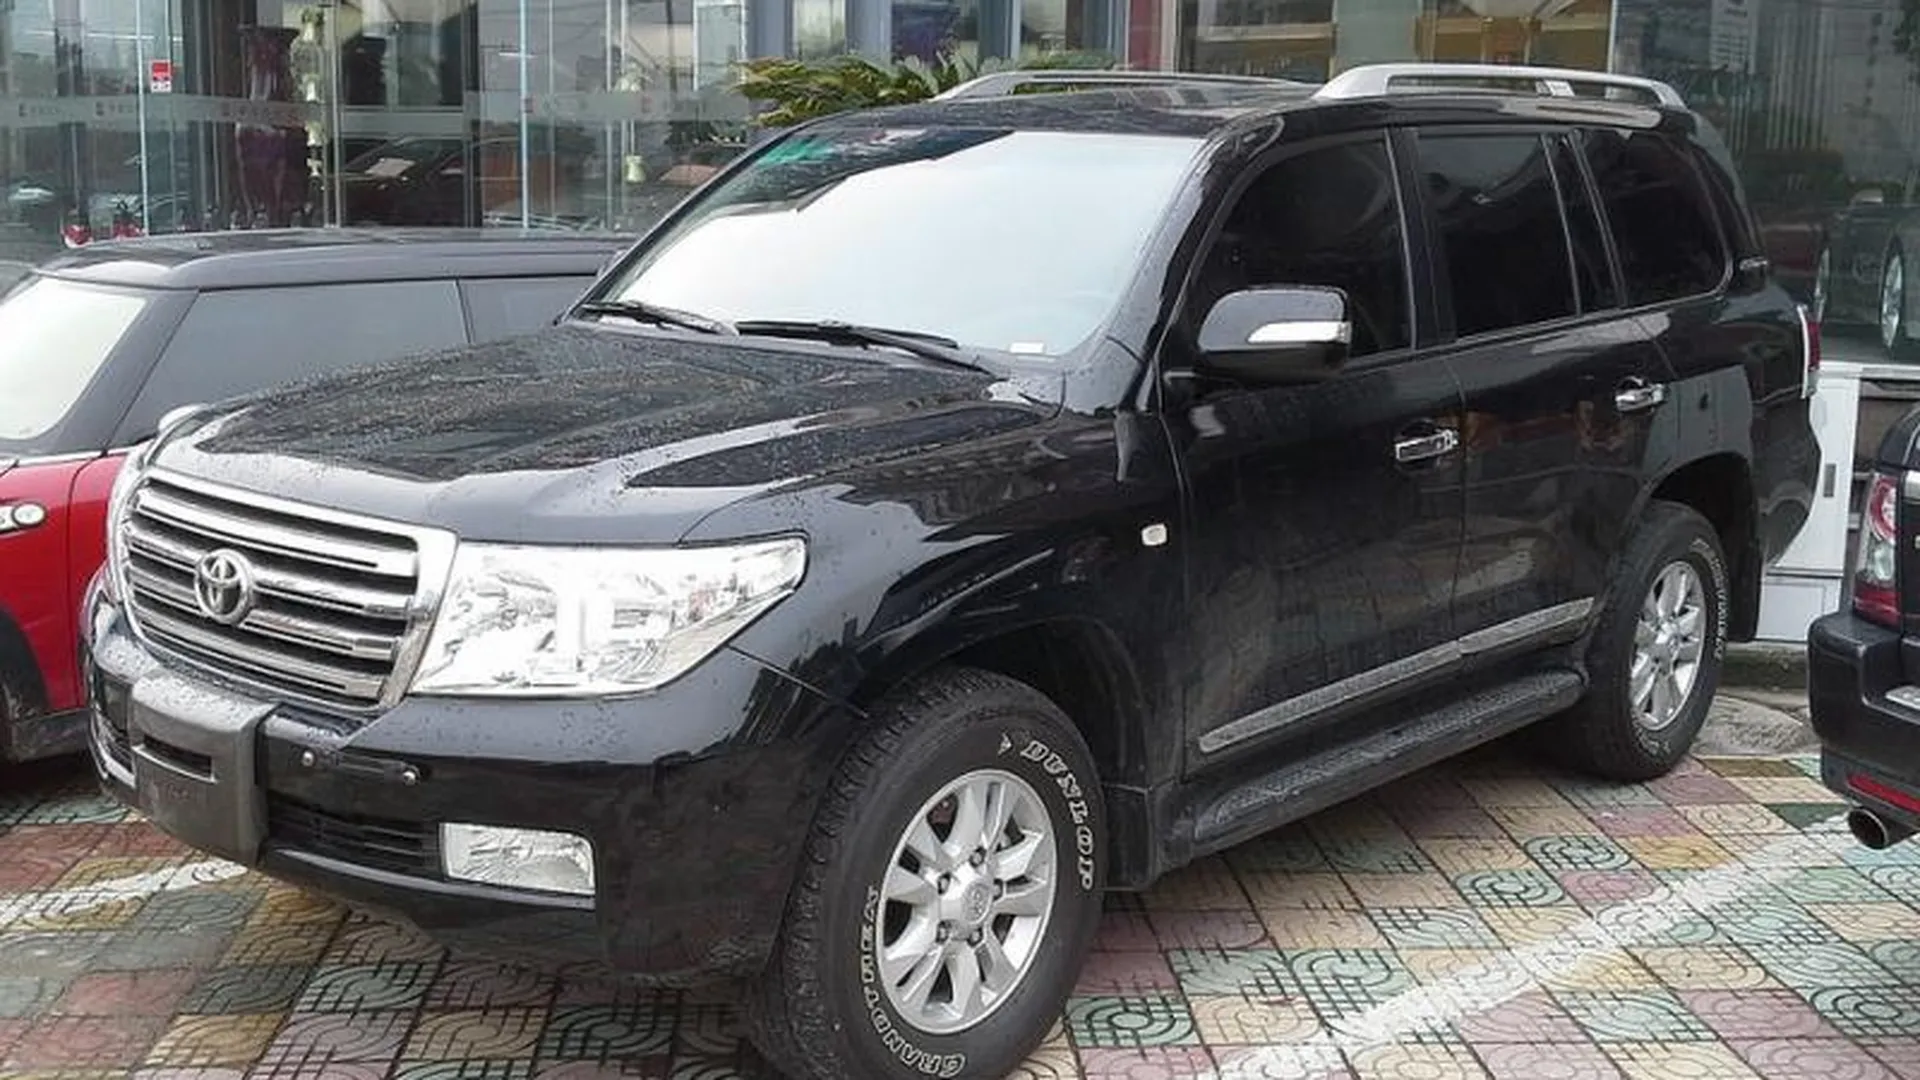 Автомобиль Toyota Land Cruiser за 4 млн рублей угнали в Рузе